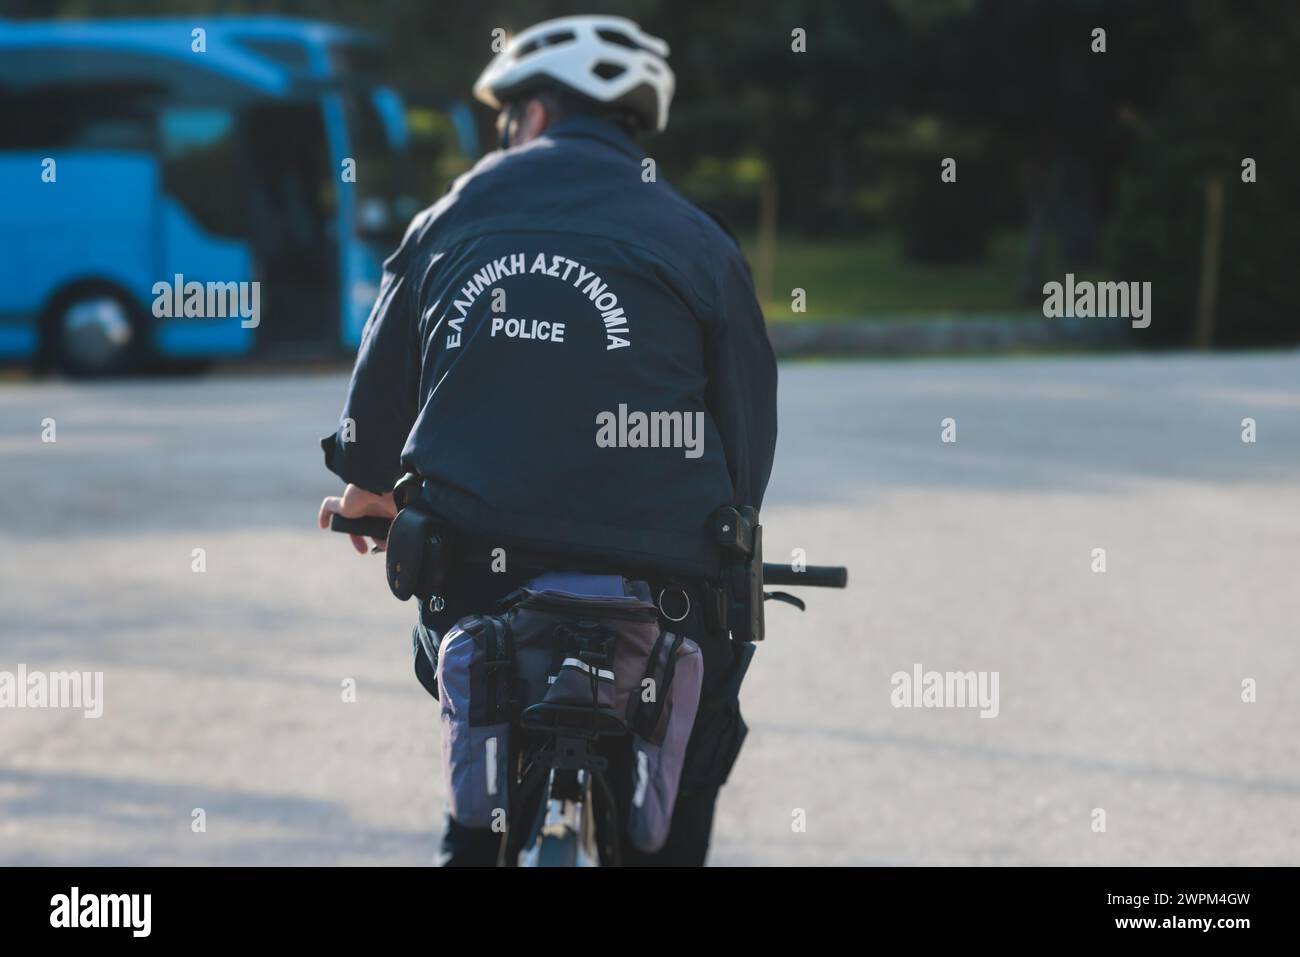 Police hellénique sur les vélos avec le logo «police grecque» sur l'uniforme, escouade de police grecque sur le vélo de garde, maintenir l'ordre public dans les rues d'Athen Banque D'Images